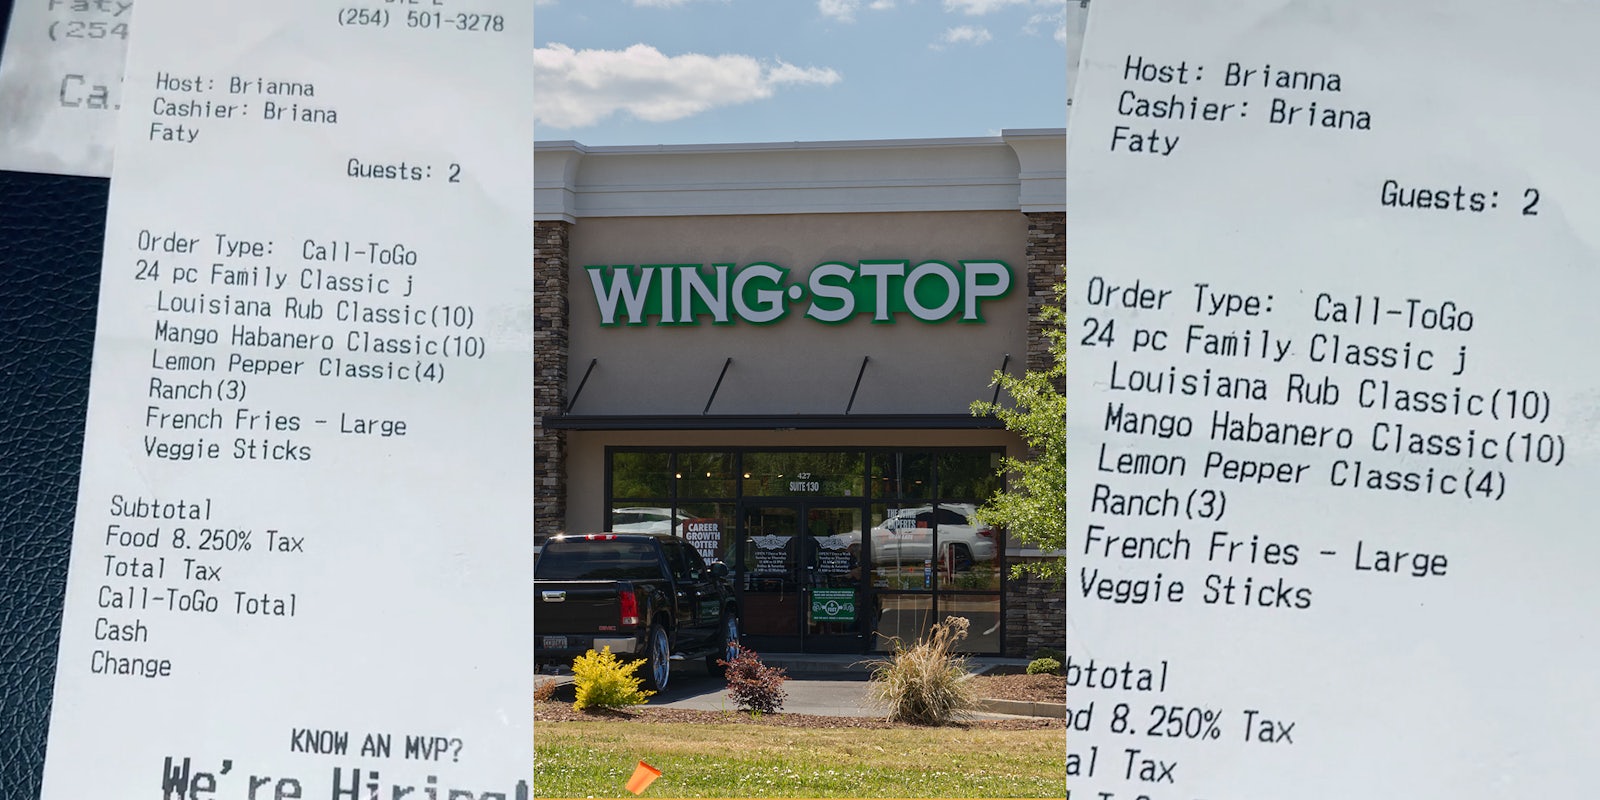 Wingstop receipt with name written as 'Faty' (l) Wingstop sign on building (c) Wingstop receipt with name written as 'Faty' (r)